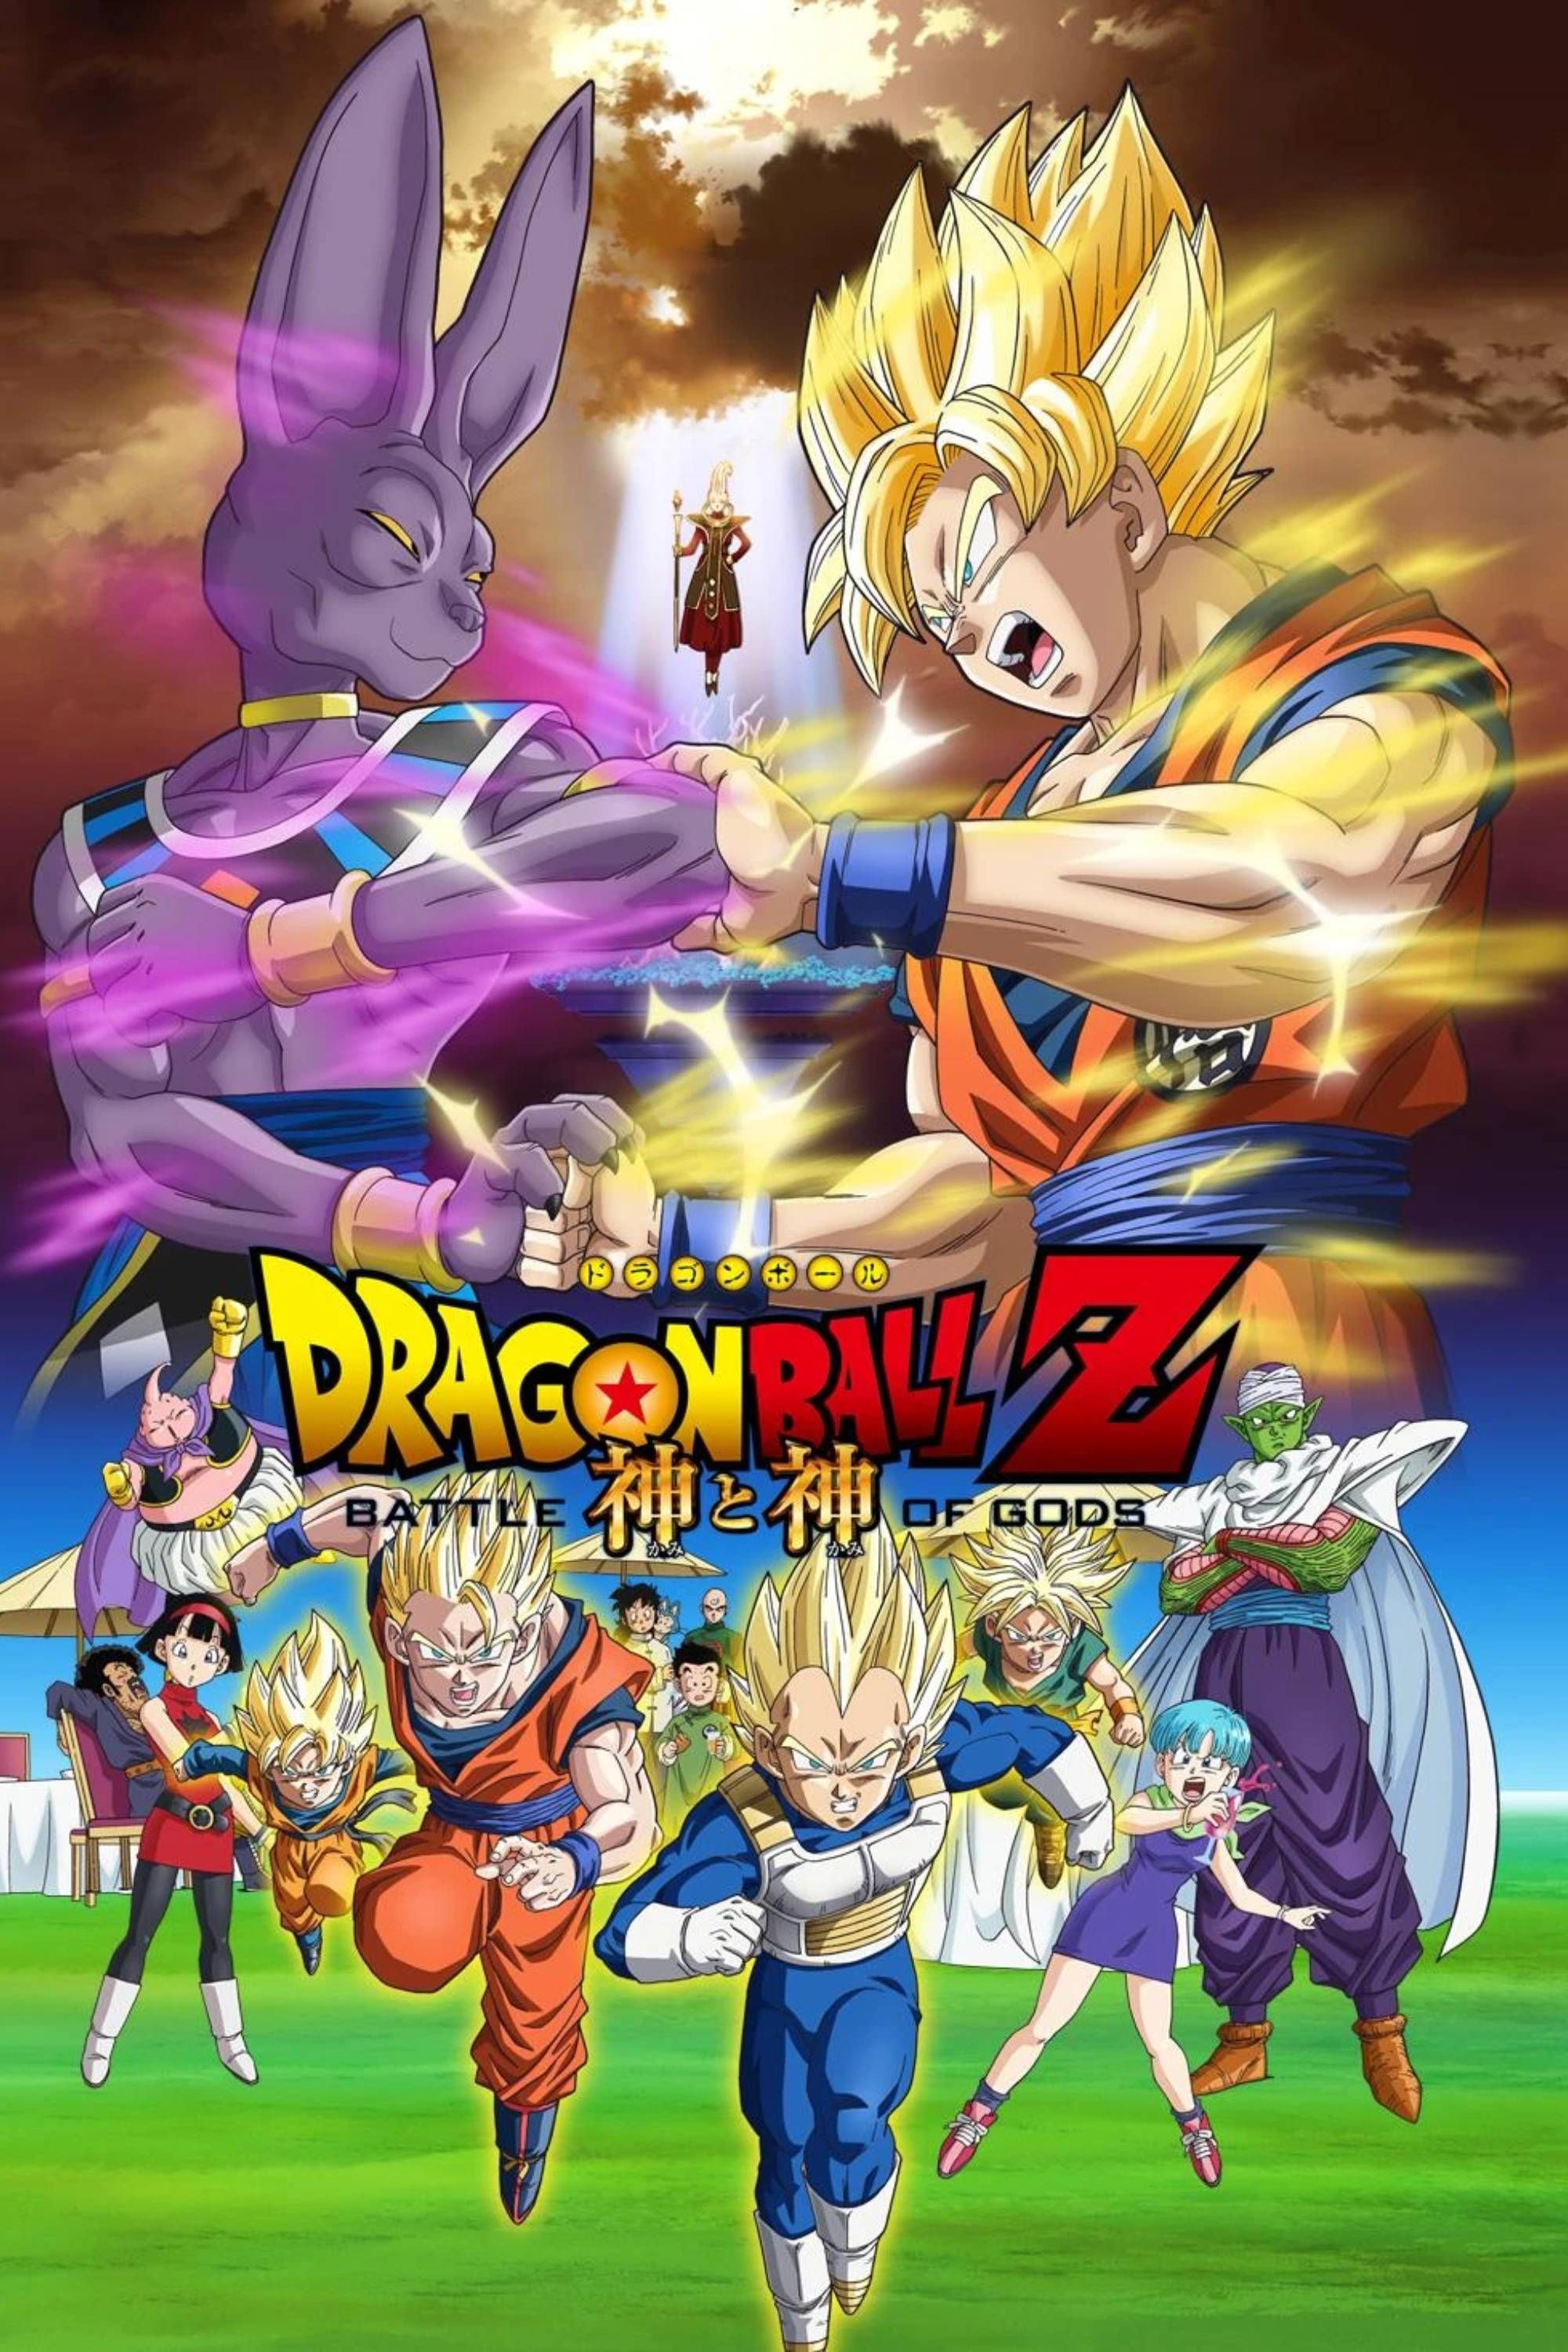 Dragon Ball Z Battle of Gods Poster